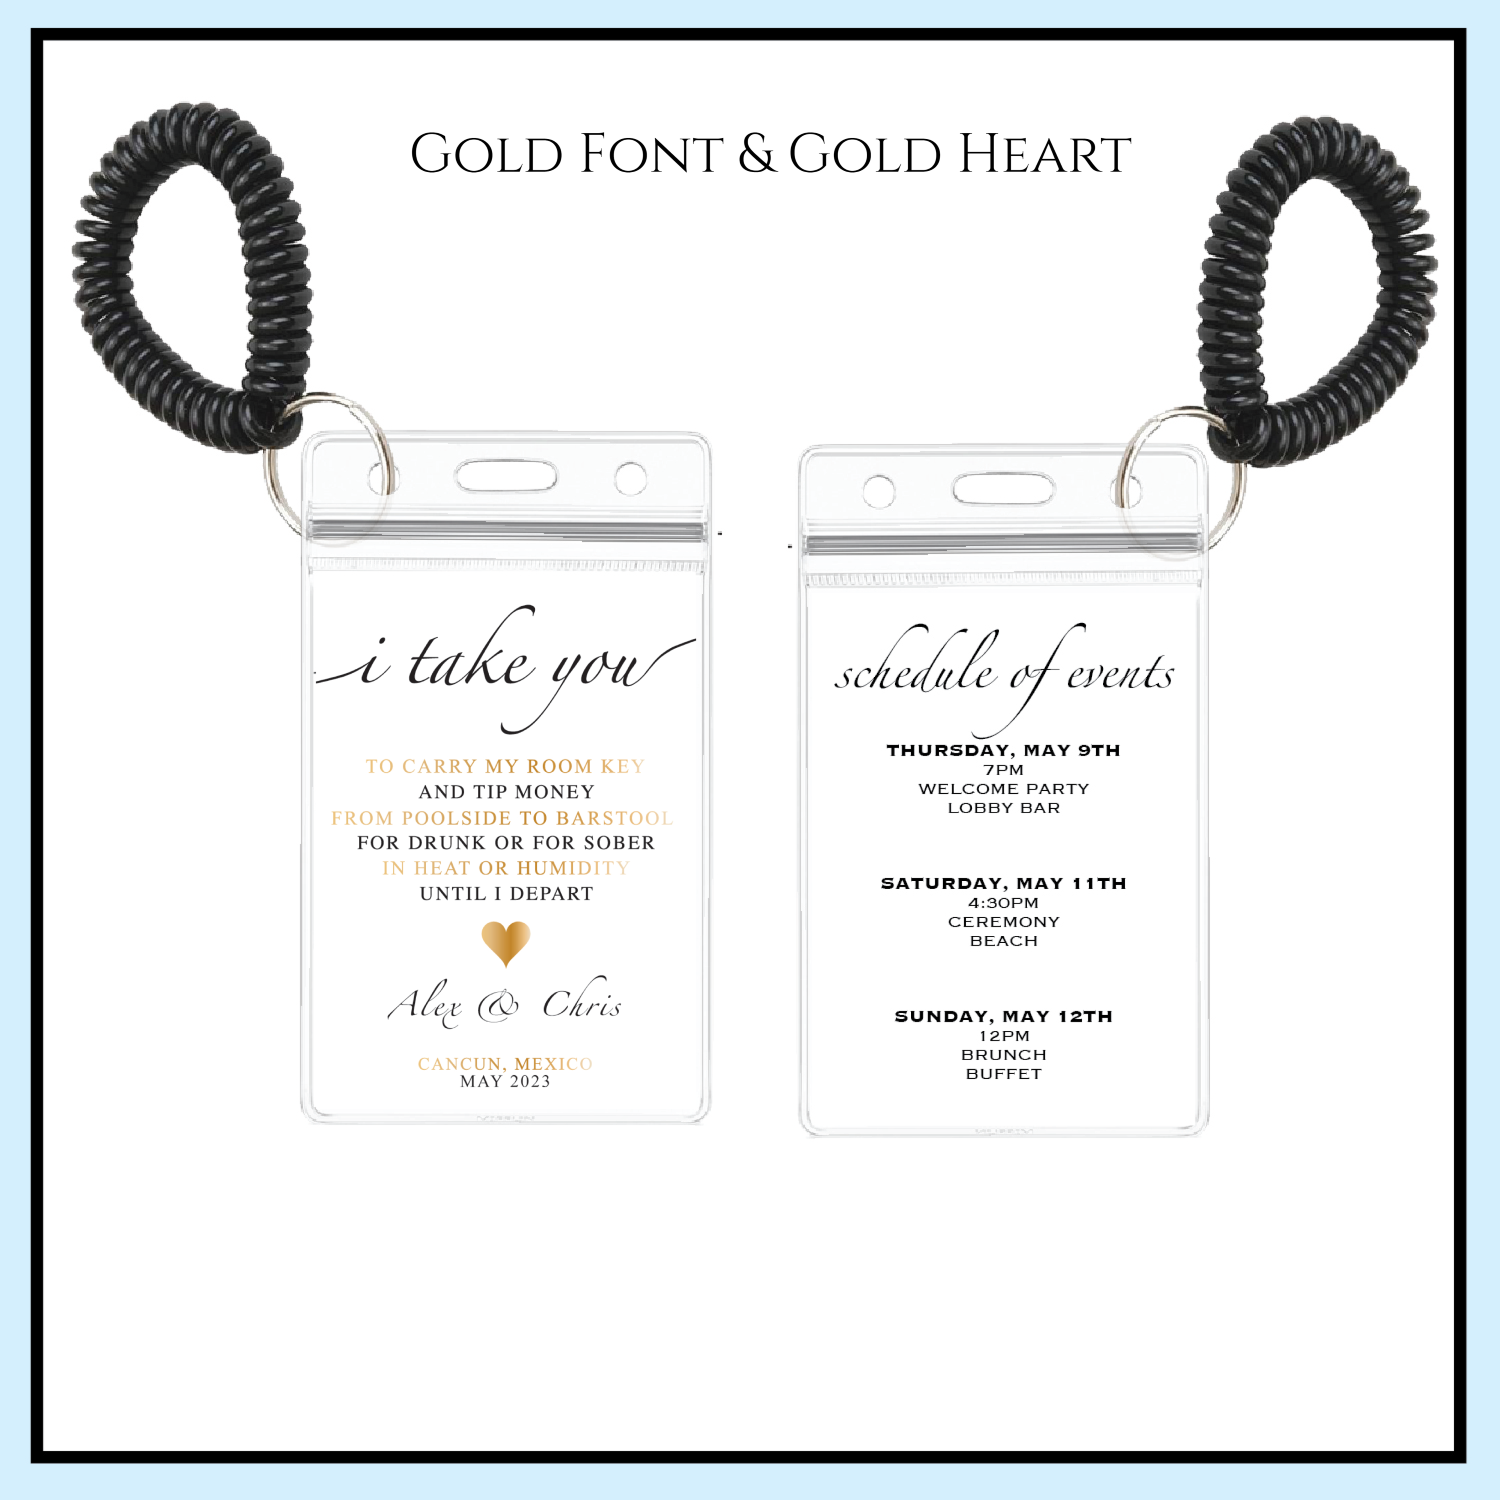 Room Key holder | Gold font & Gold heart